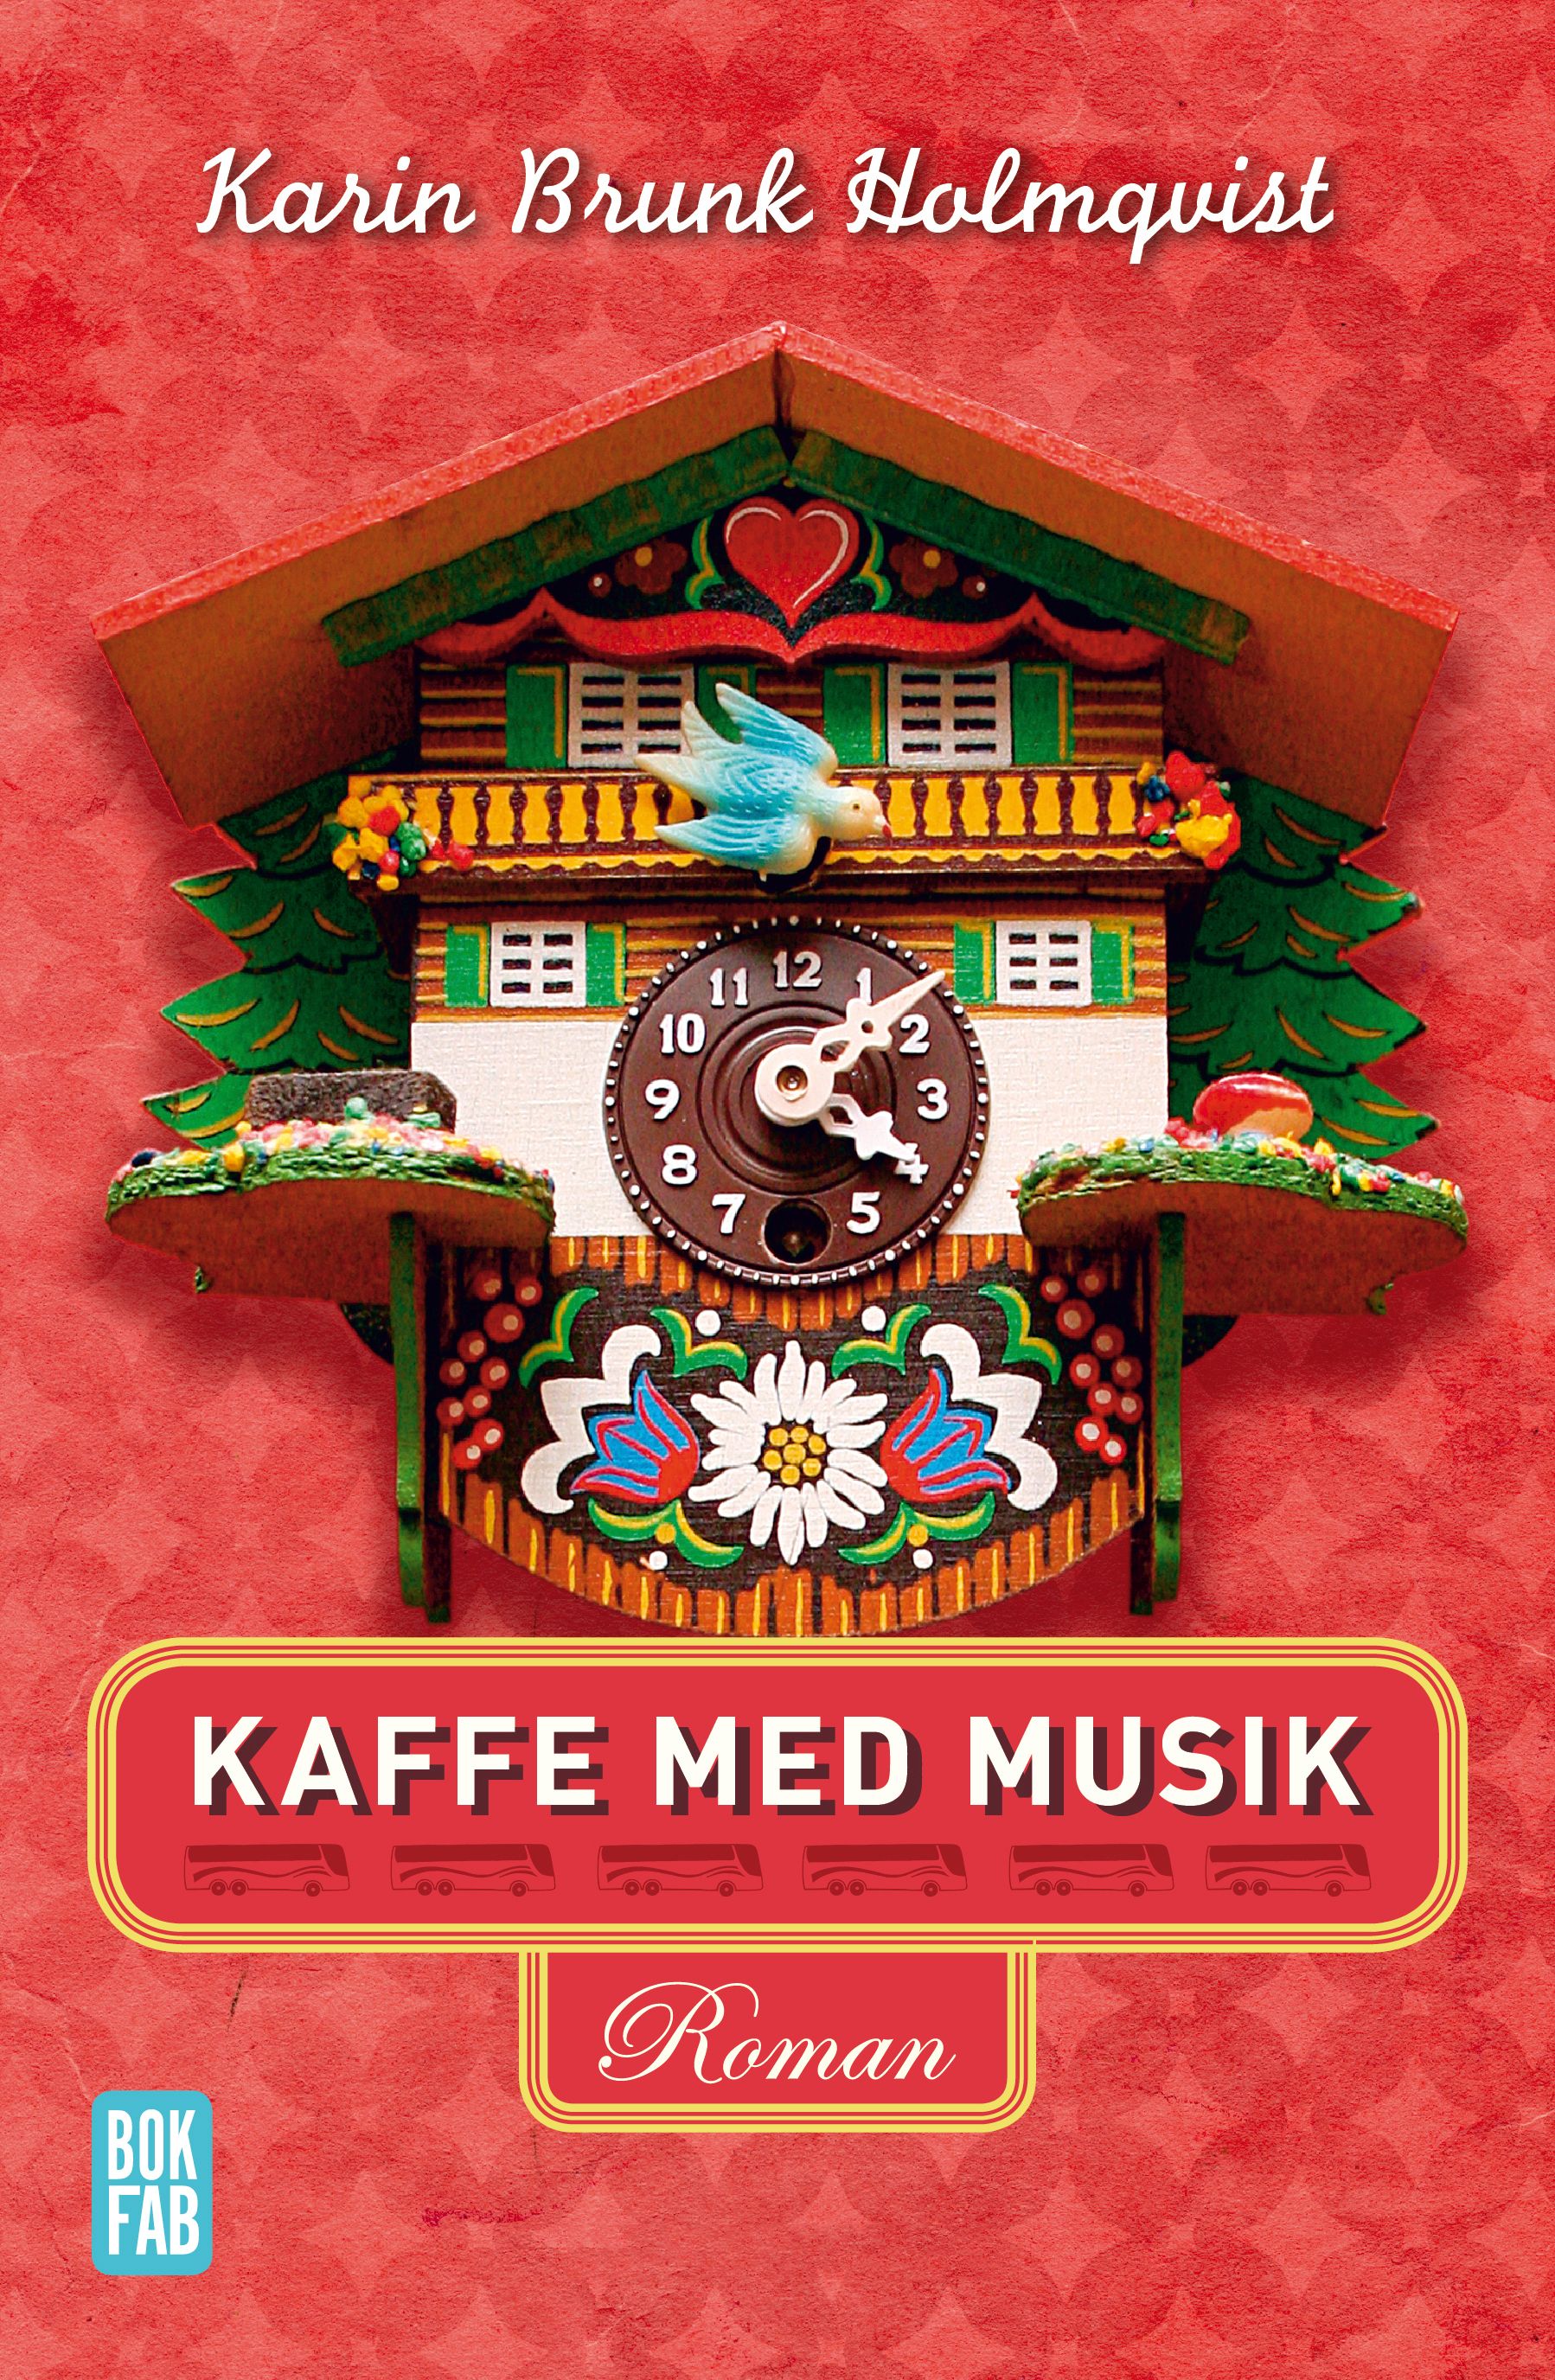 Kaffe med musik, e-bog af Karin Brunk Holmqvist